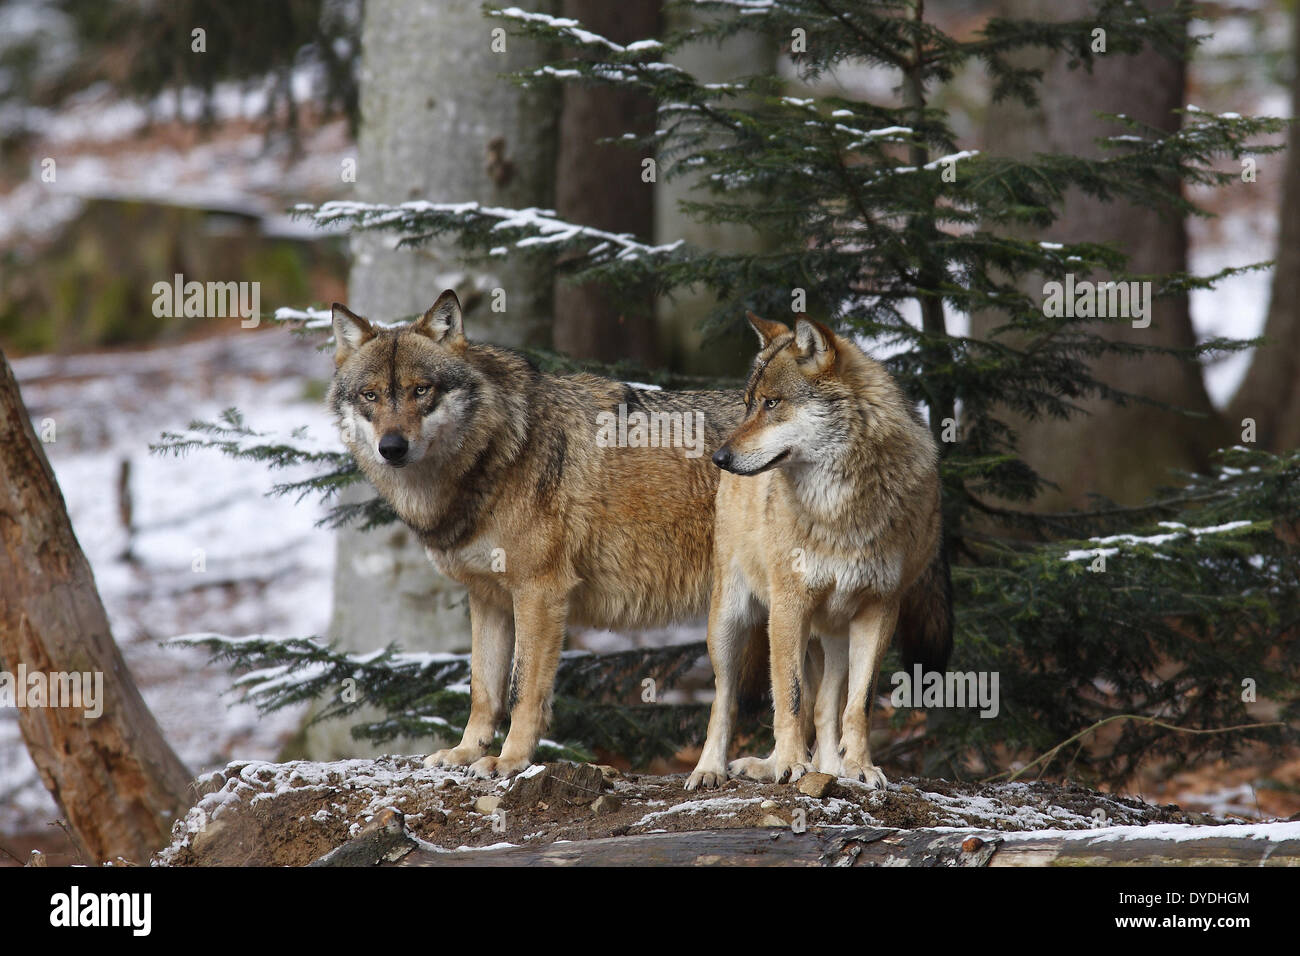 Canidae, Canis, gray Wolf, lupus, Mammalia, nature, predator, mammal, vertebrate, Wolf Stock Photo